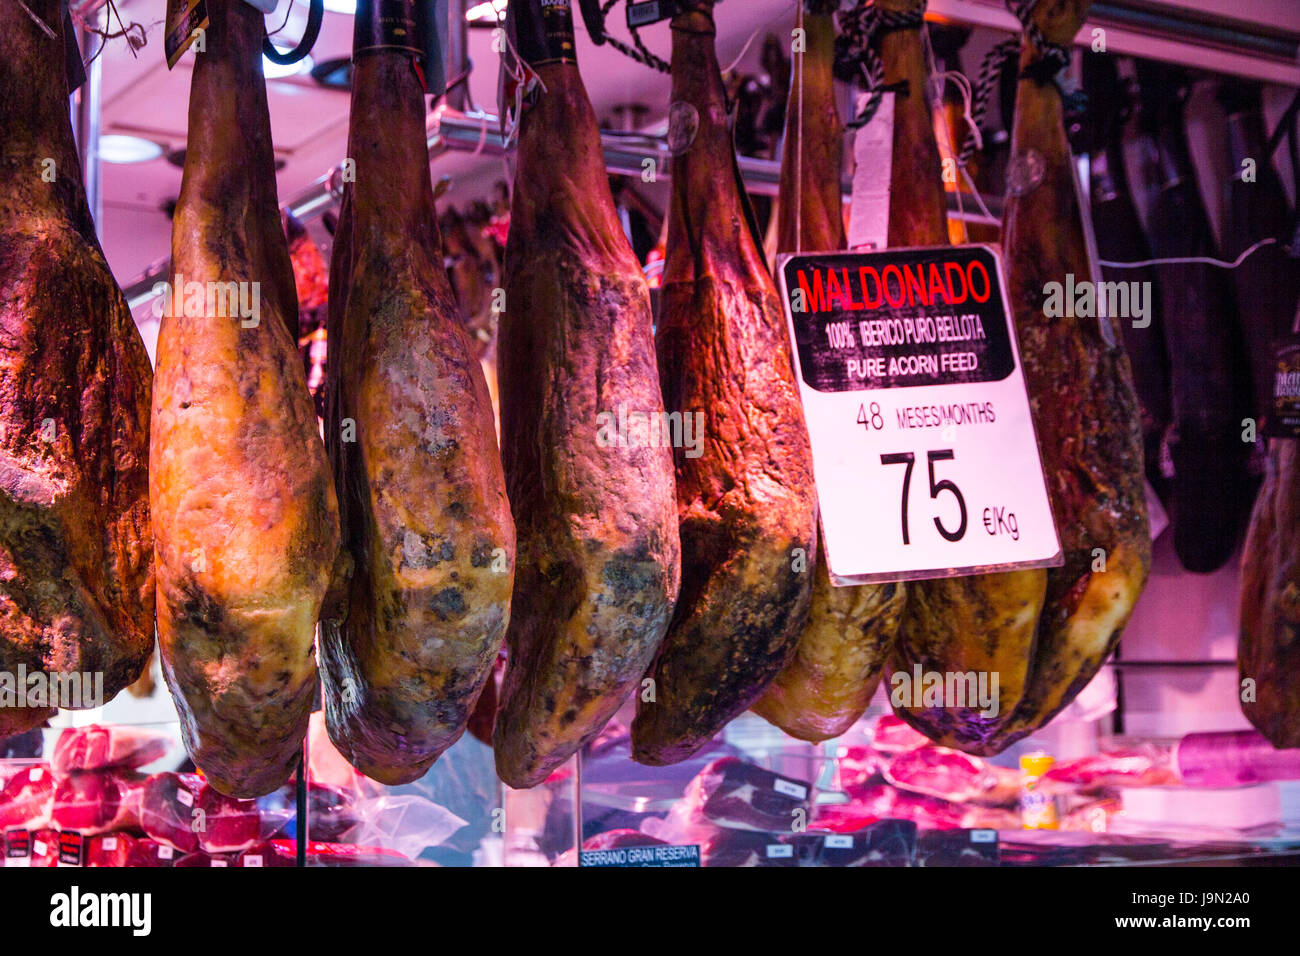 Barcelonas höhlenartigen Markt La Boqueria ist berühmt für seine Jamon Iberico, der wohl weltweit besten schmeckenden Schinken, für einen schwarzen iberischen Schwein benannt. Stockfoto